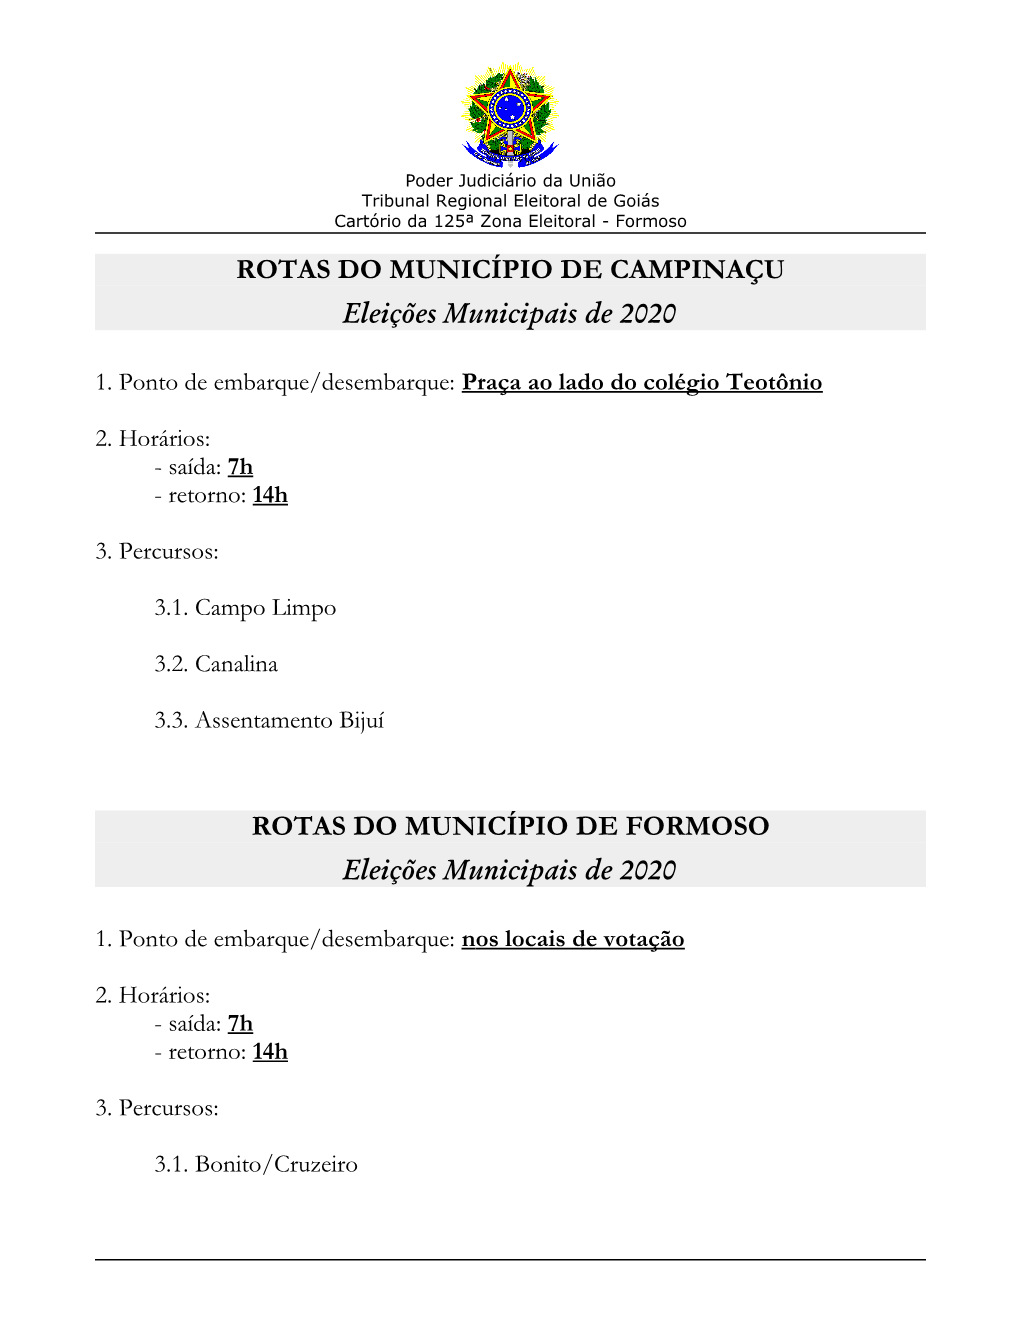 ROTAS DO MUNICÍPIO DE CAMPINAÇU Eleições Municipais De 2020